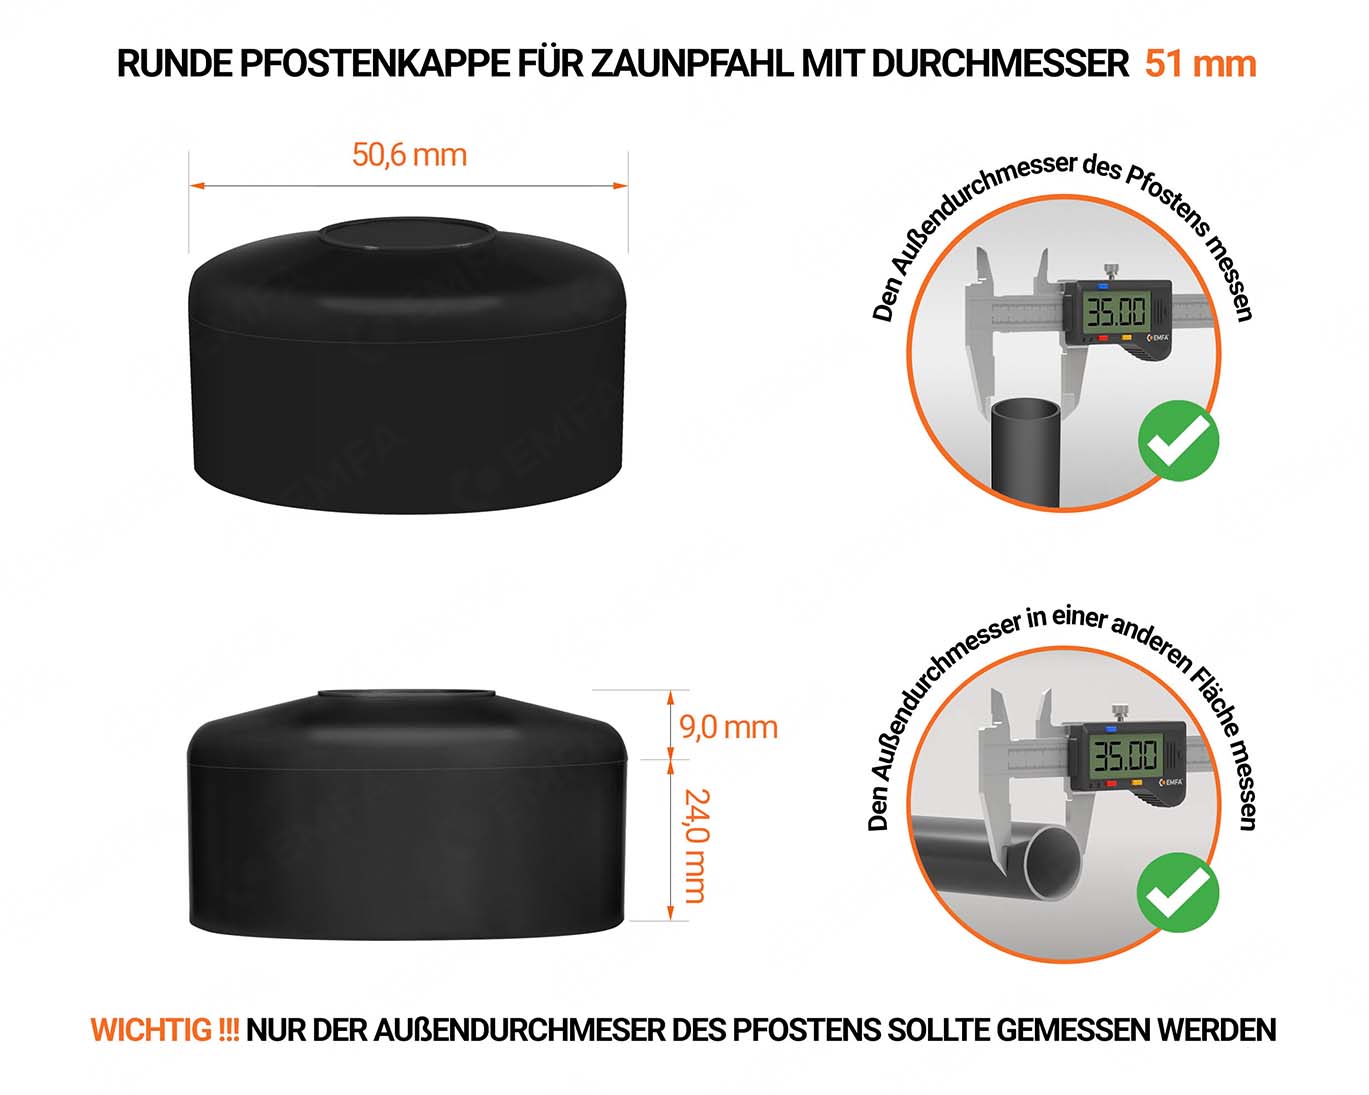 Schwarze Pfostenkappen rund für Pfostendurchmesser  51 mm mit technischen Abmessungen und Anleitung für korrekte Messung